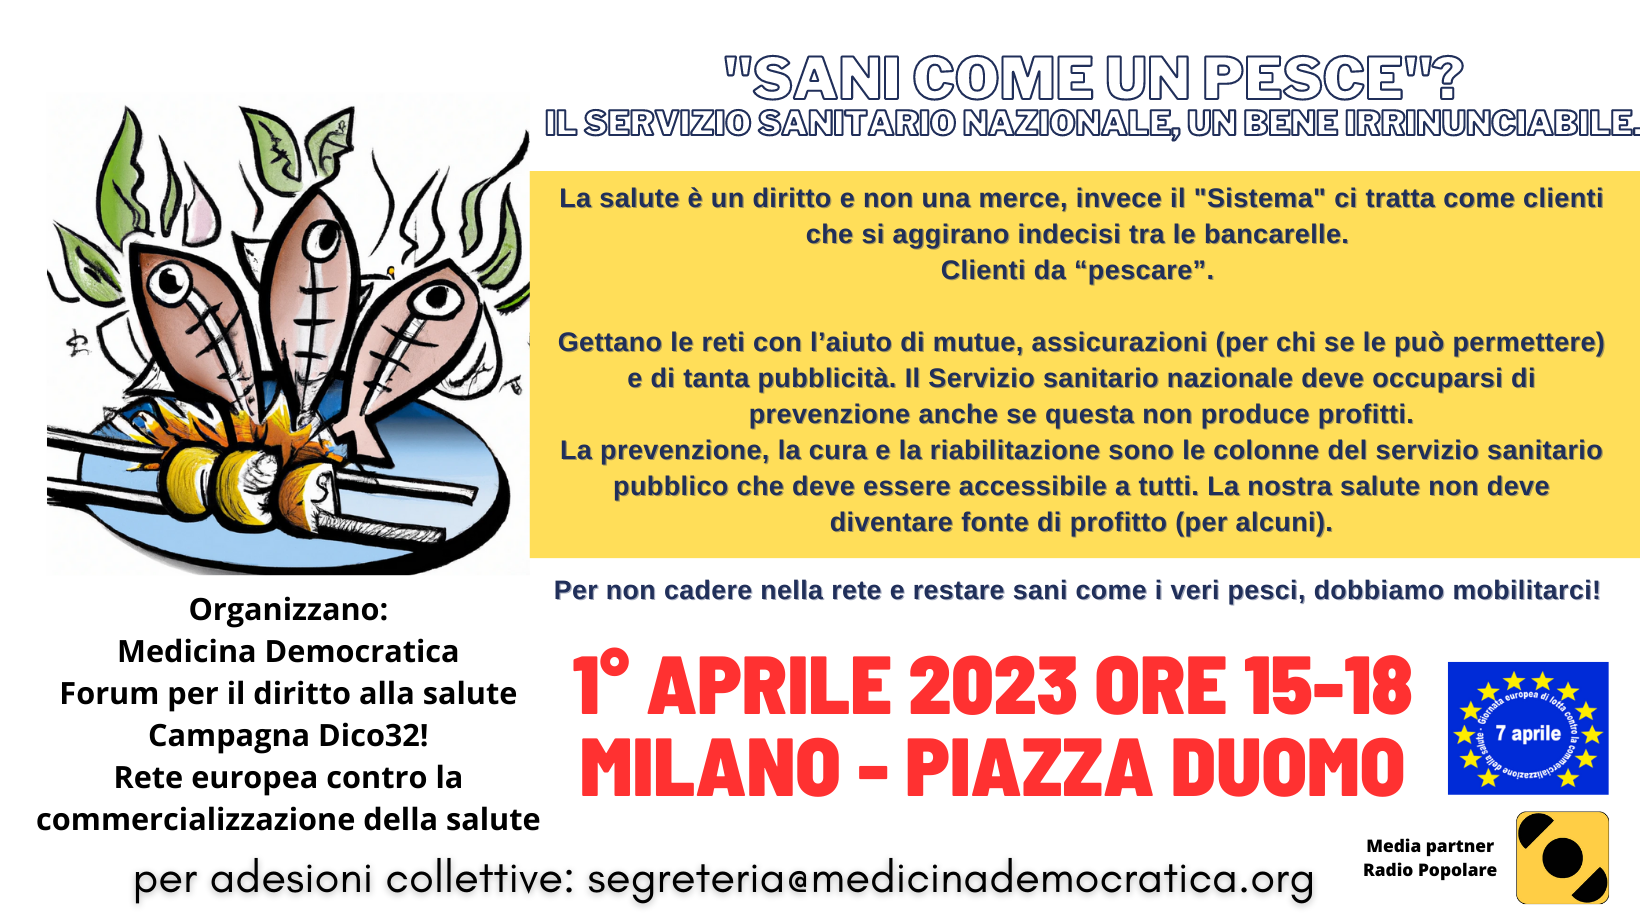 Tuteliamo il Servizio Sanitario Pubblico - 1° aprile 2023 Piazza Duomo  Milano - Medicina DemocraticaMedicina Democratica